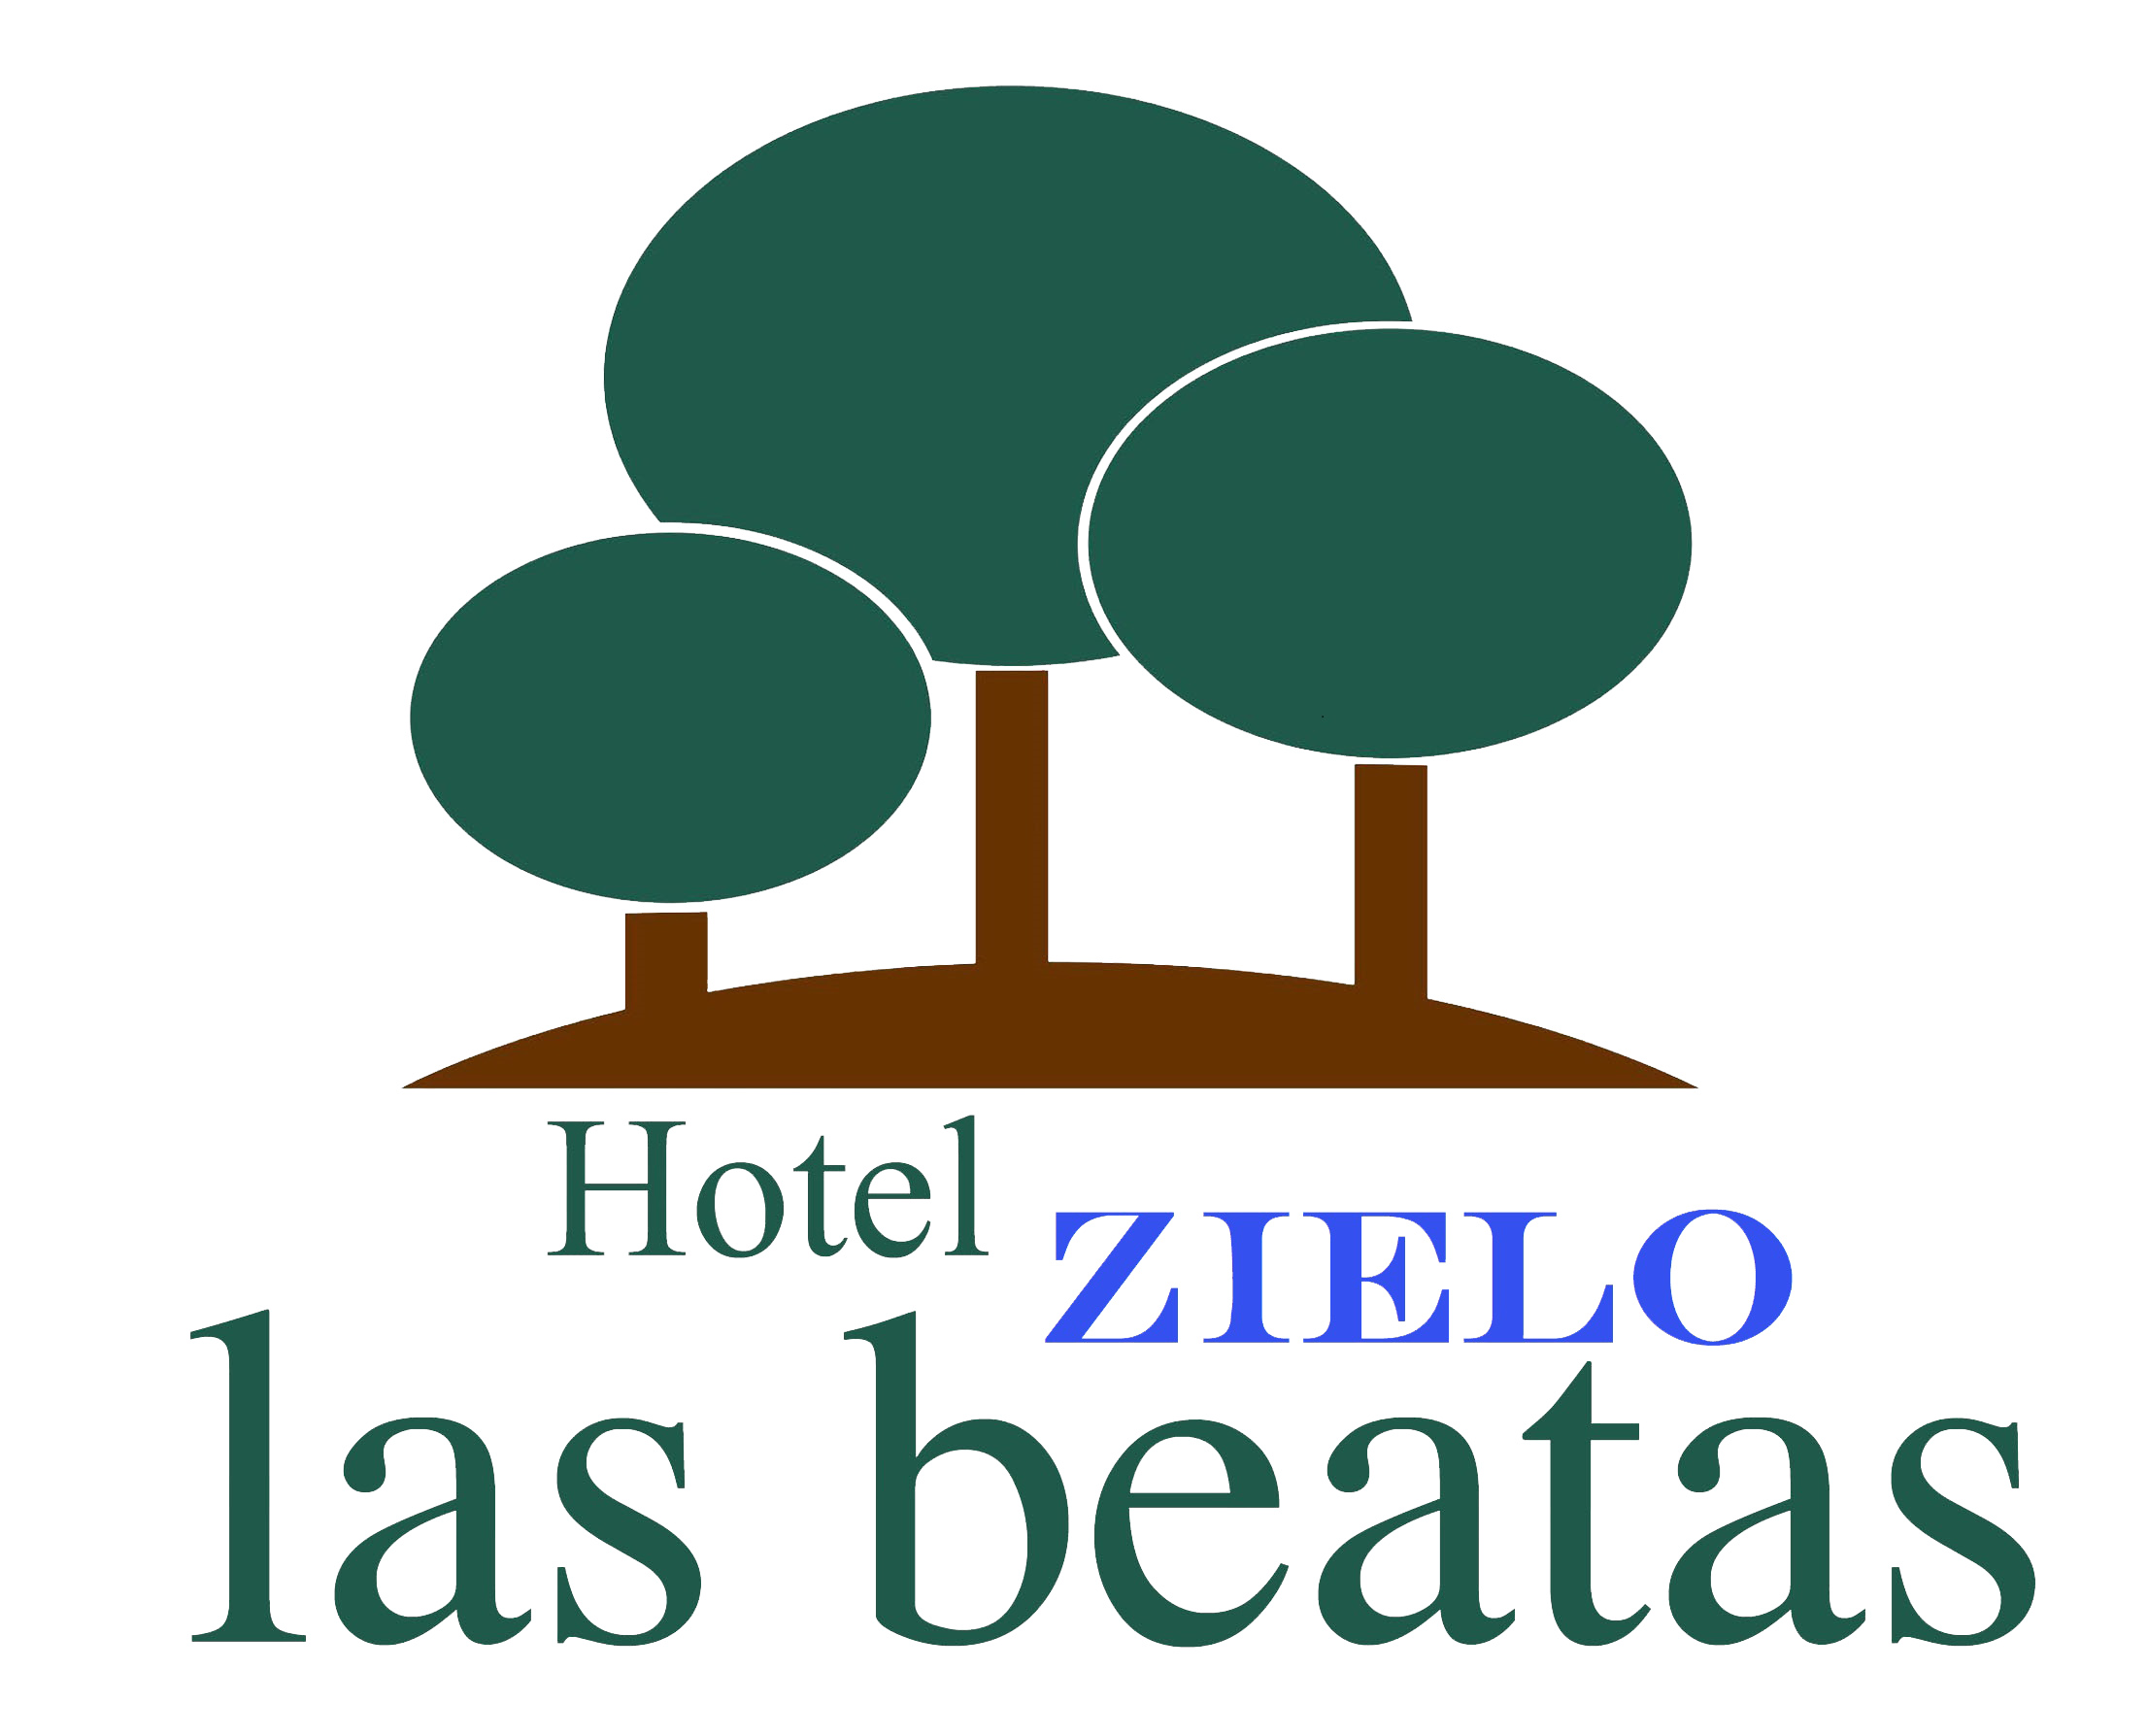 Hotel Zielo Las Beatas